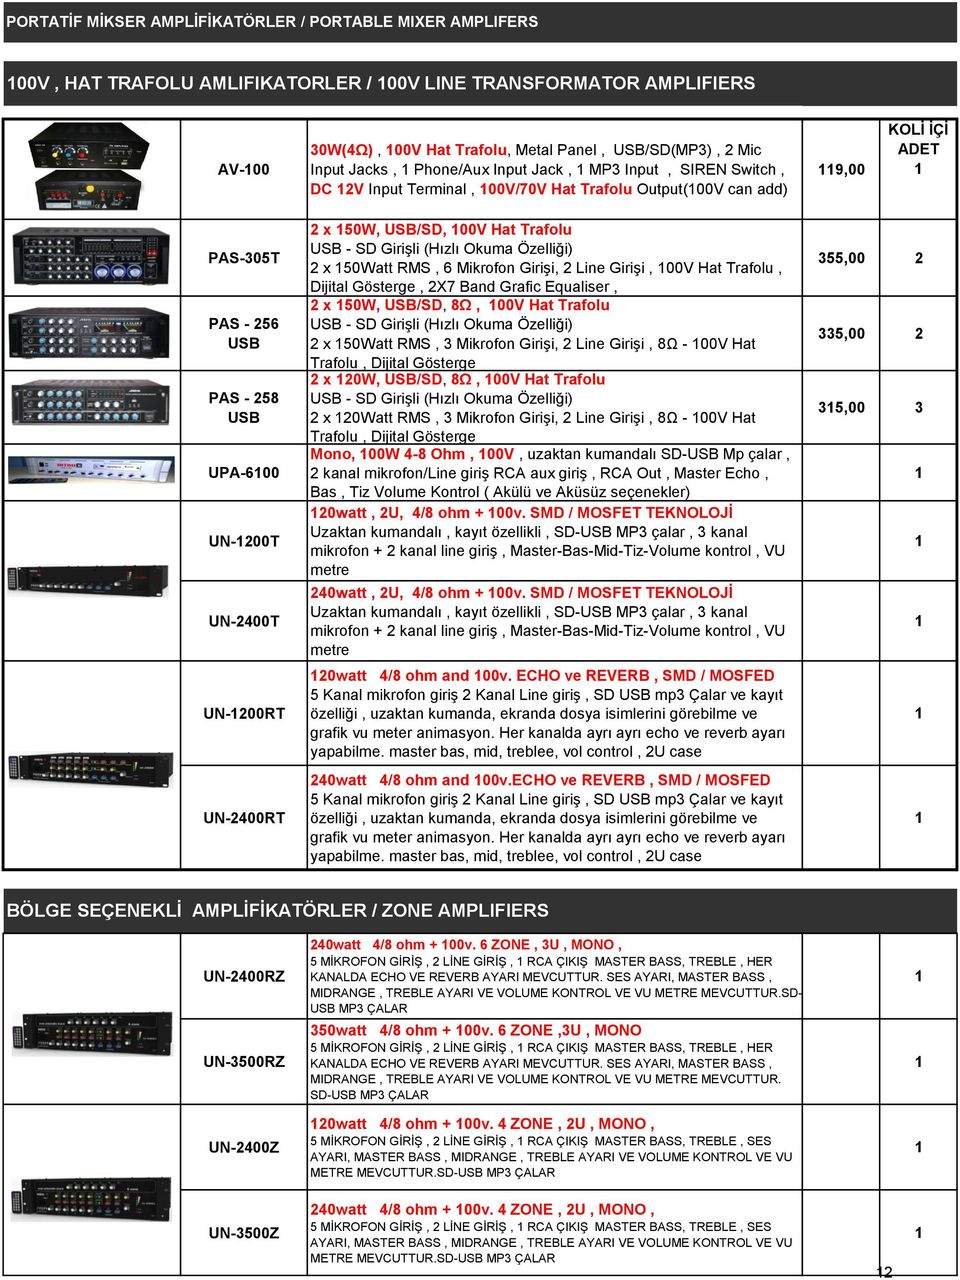 UN-2400RT 2 x 50W, USB/SD, 00V Hat Trafolu USB - SD Girişli (Hızlı Okuma Özelliği) 2 x 50Watt RMS, 6 Mikrofon Girişi, 2 Line Girişi, 00V Hat Trafolu, Dijital Gösterge, 2X7 Band Grafic Equaliser, 2 x